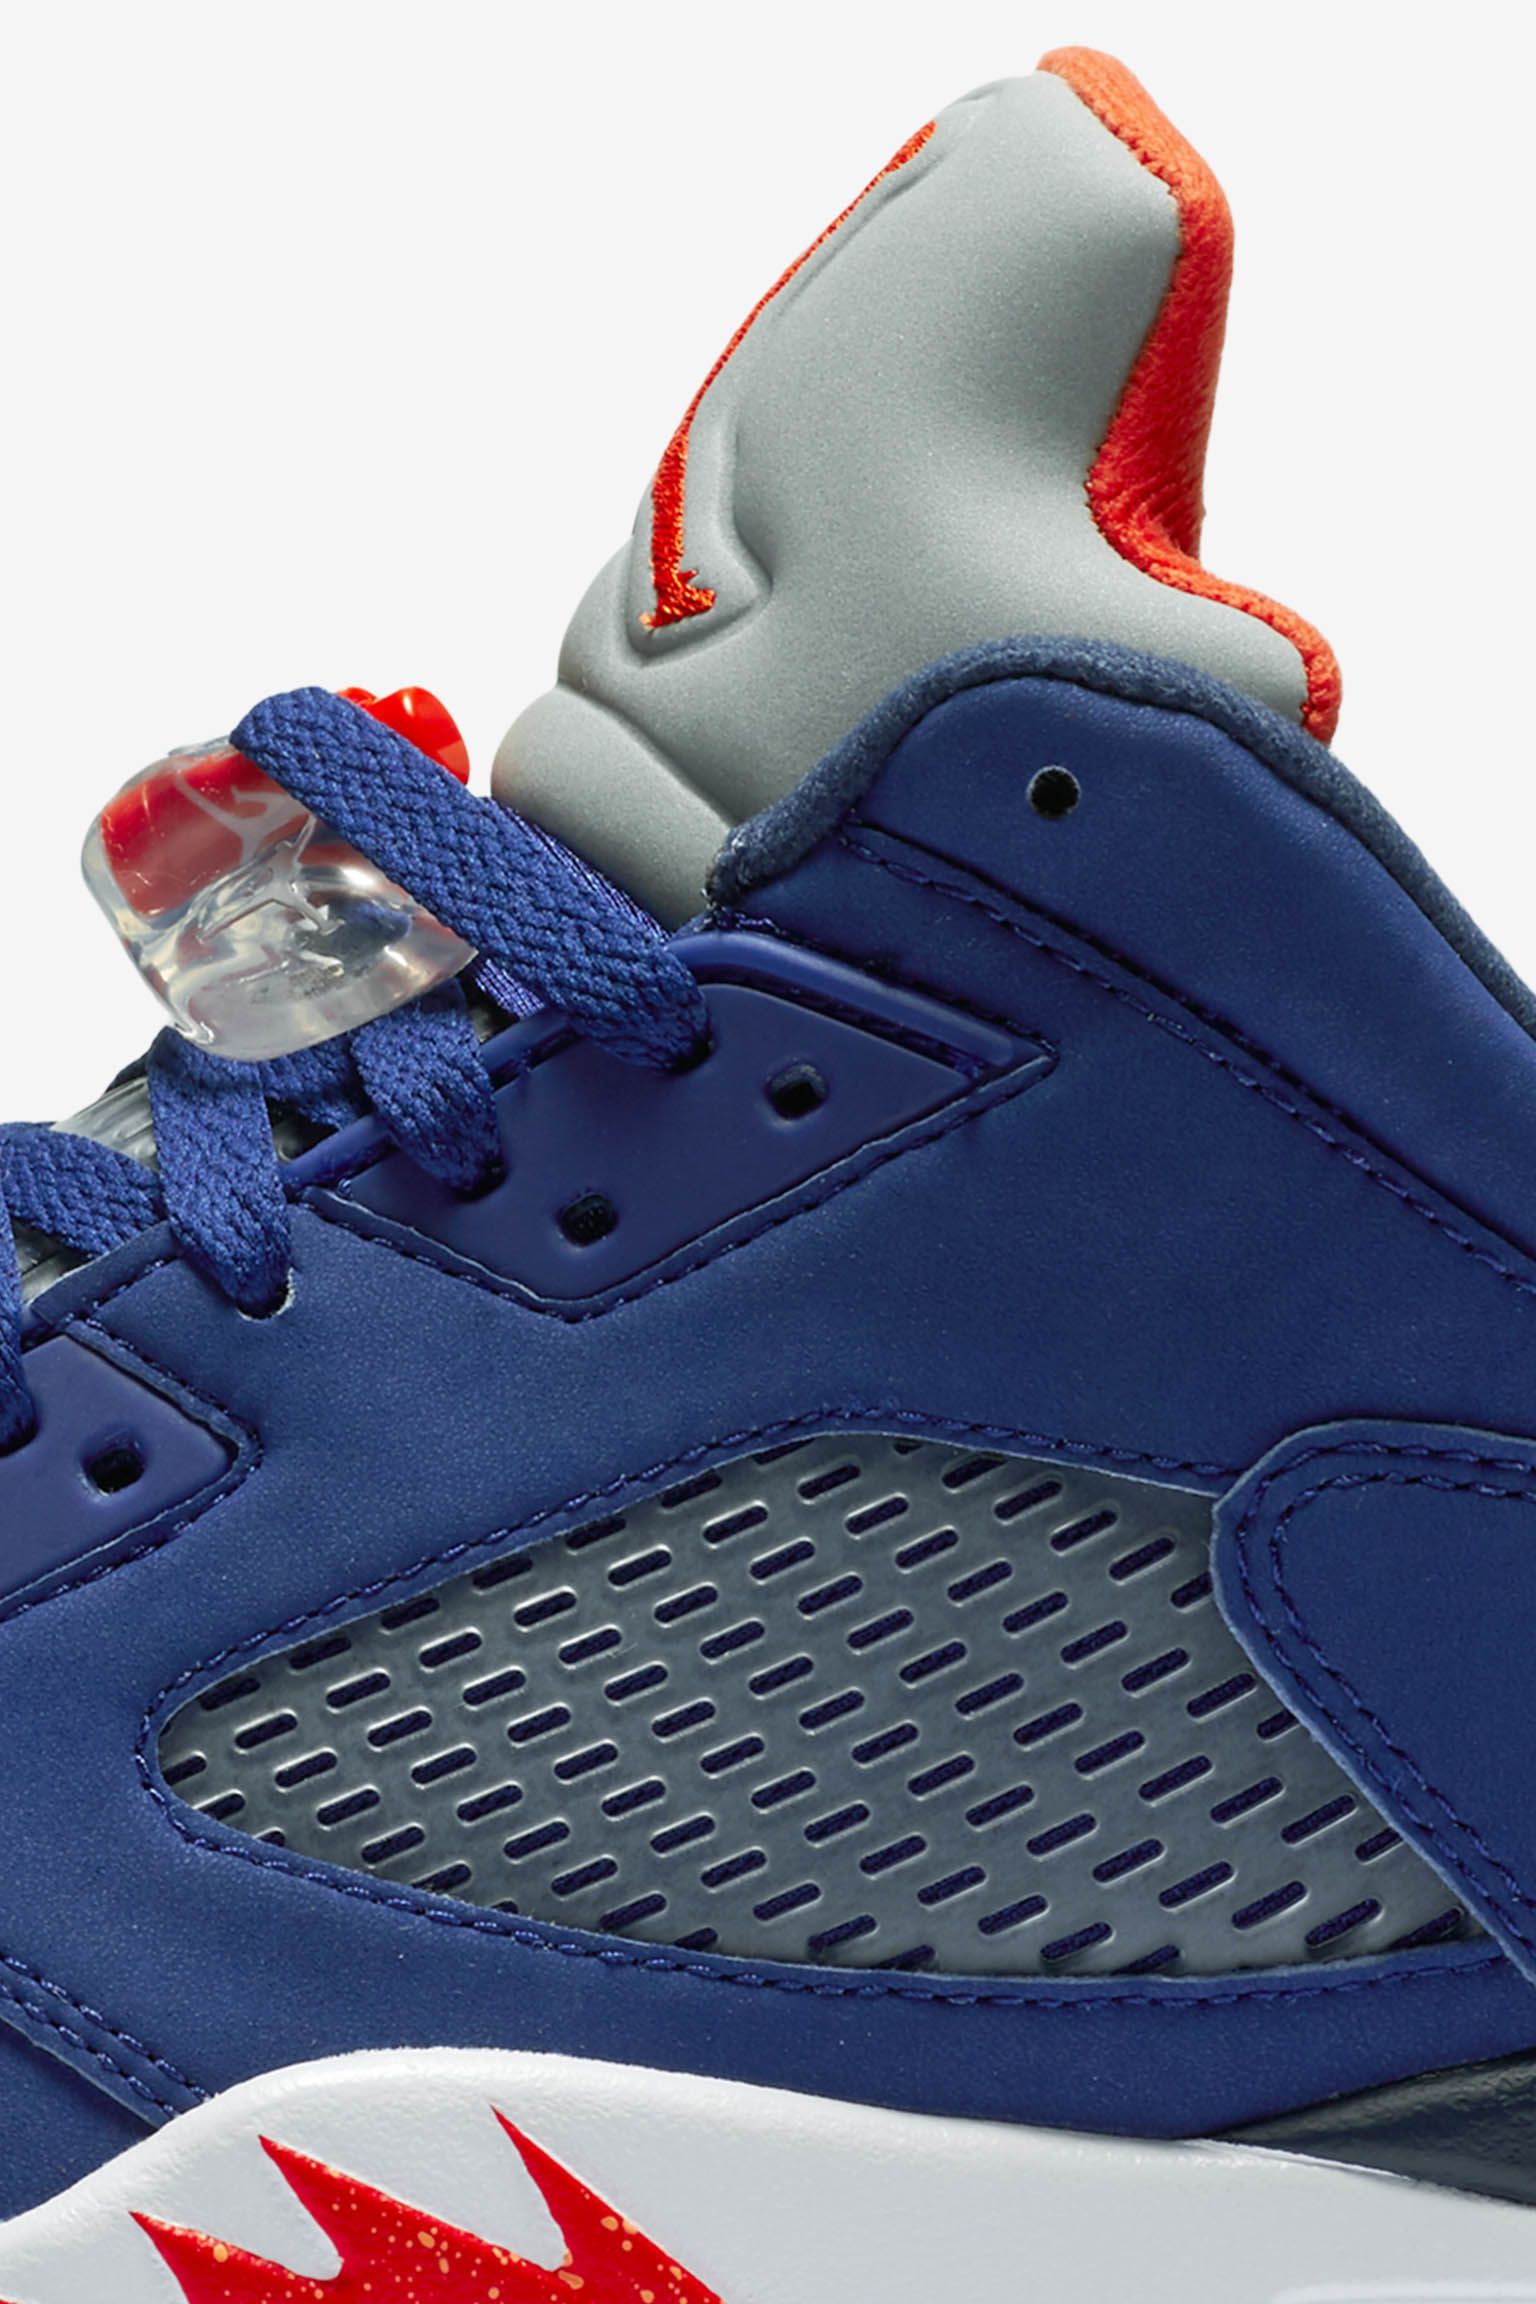 Air Jordan 5 Retro Low Royal Blue Release Date Nike Snkrs